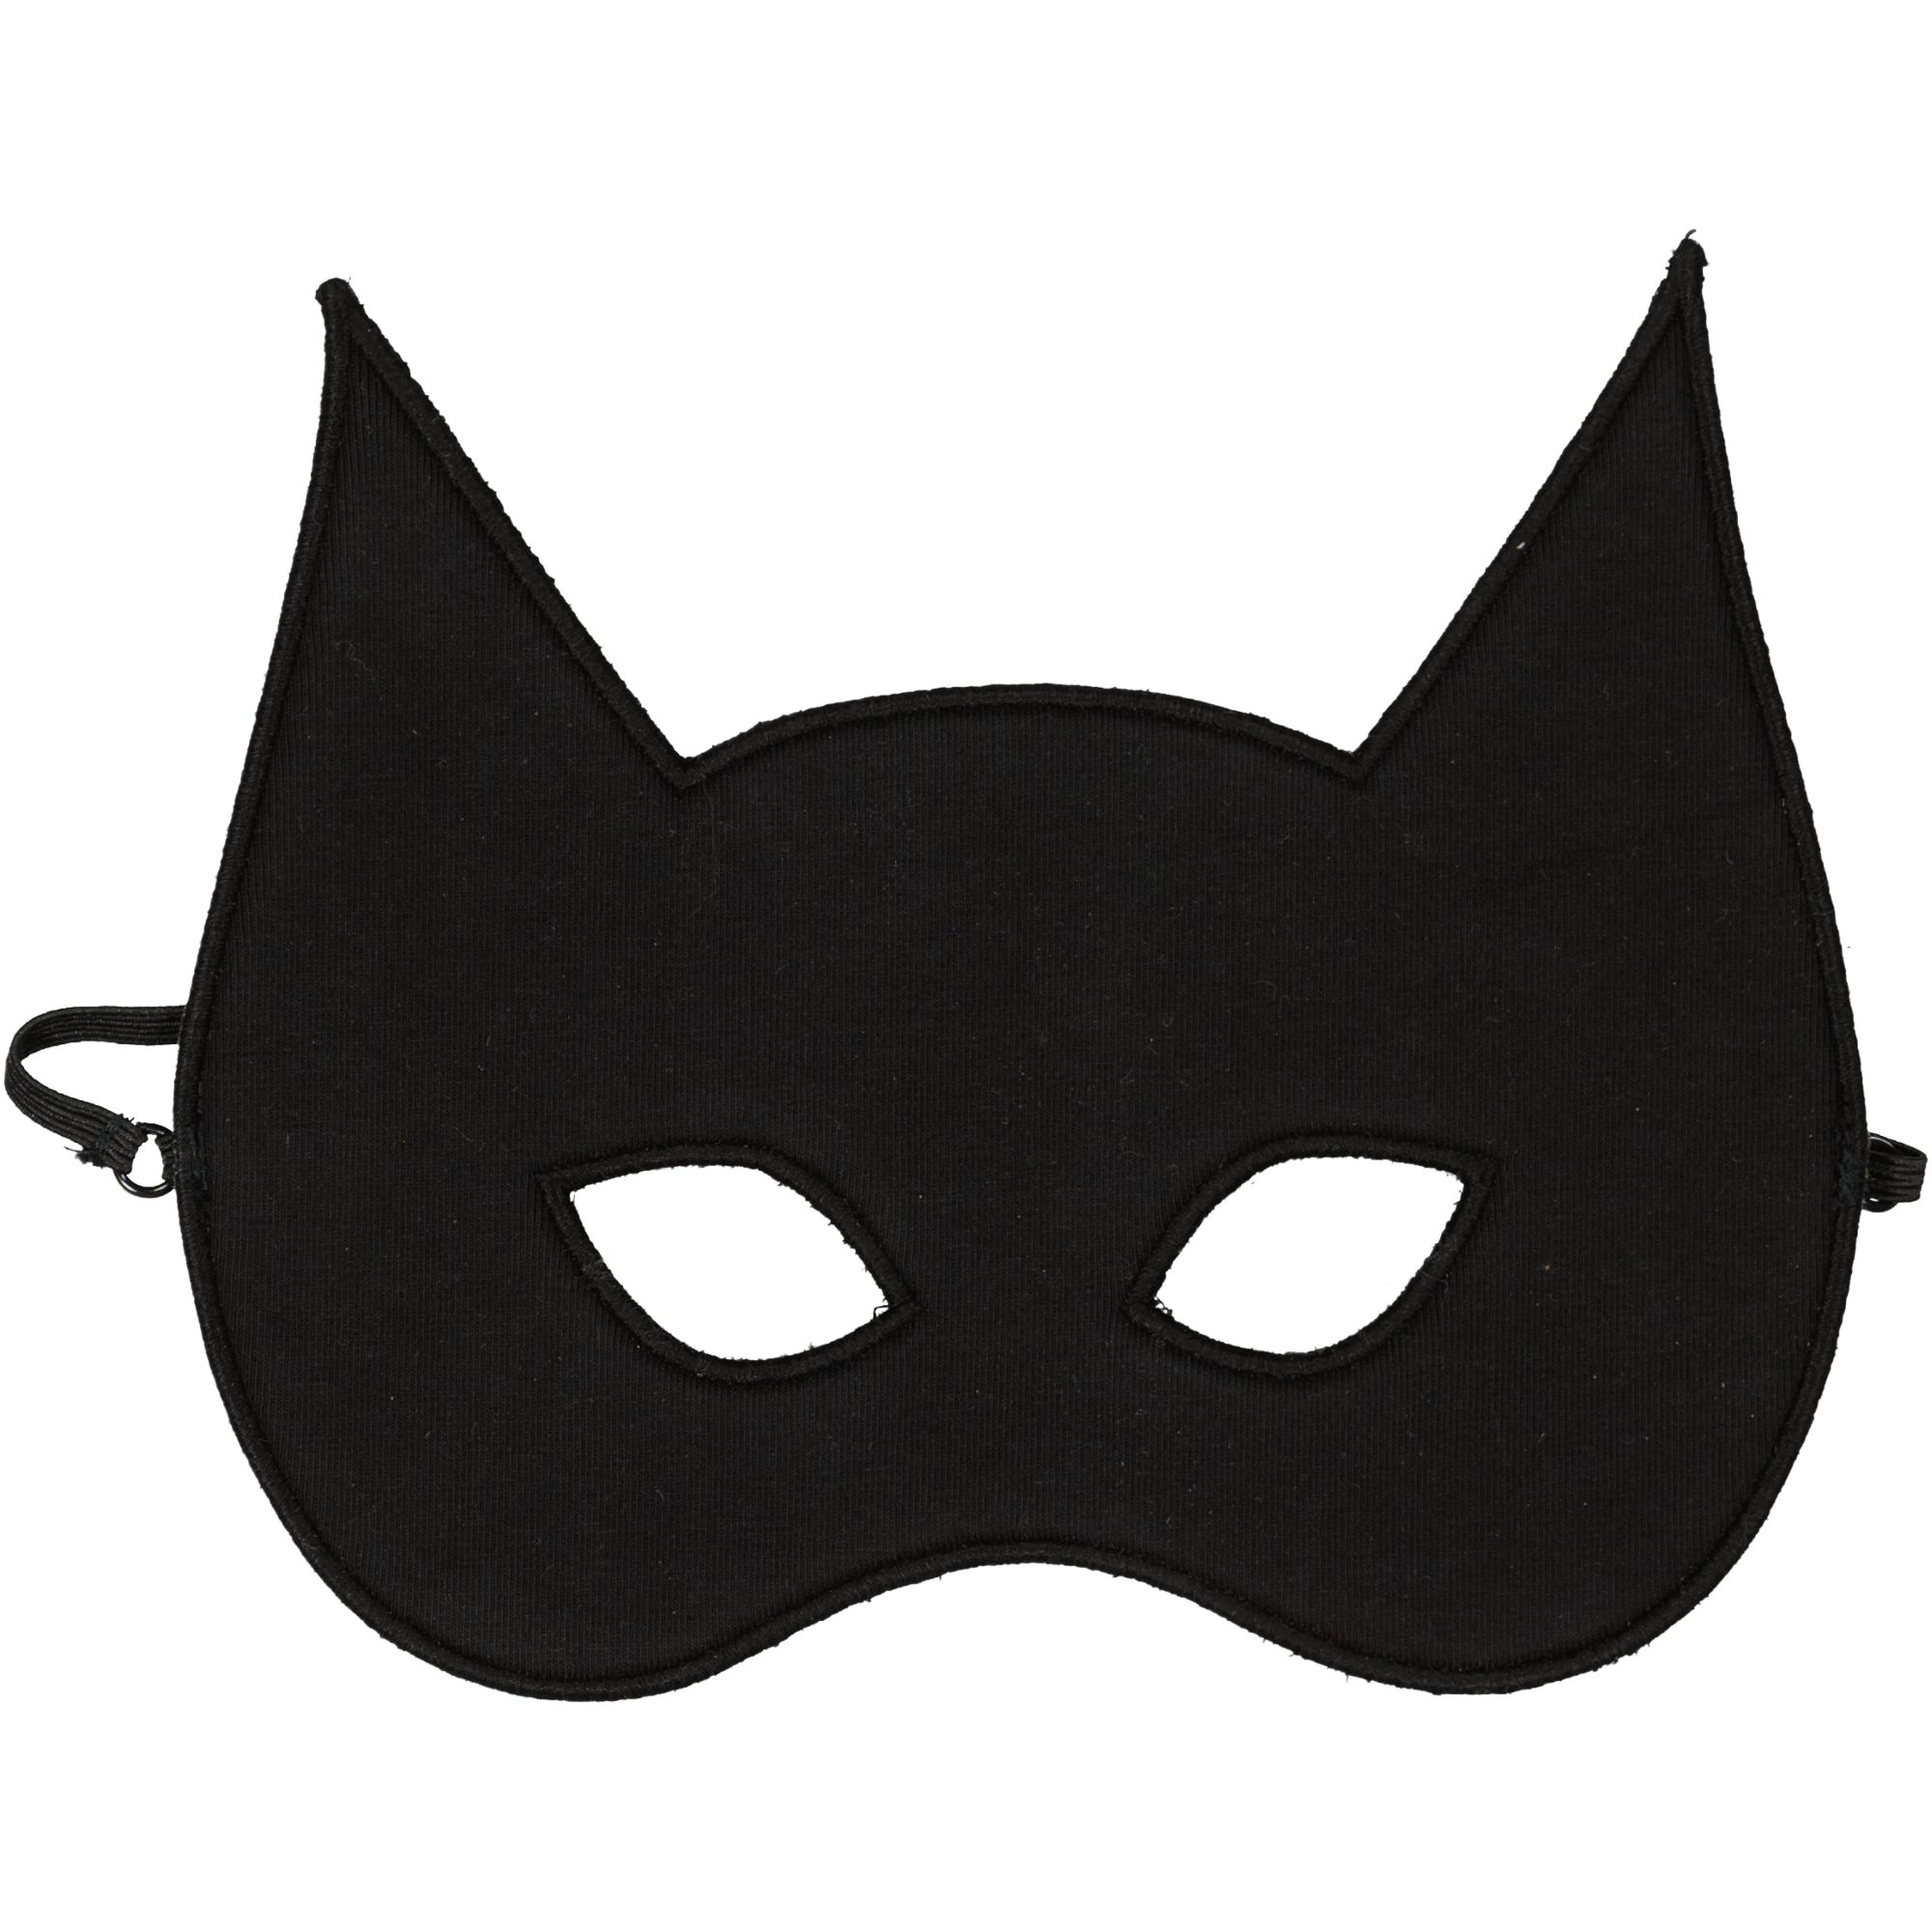 Mask Black One Size